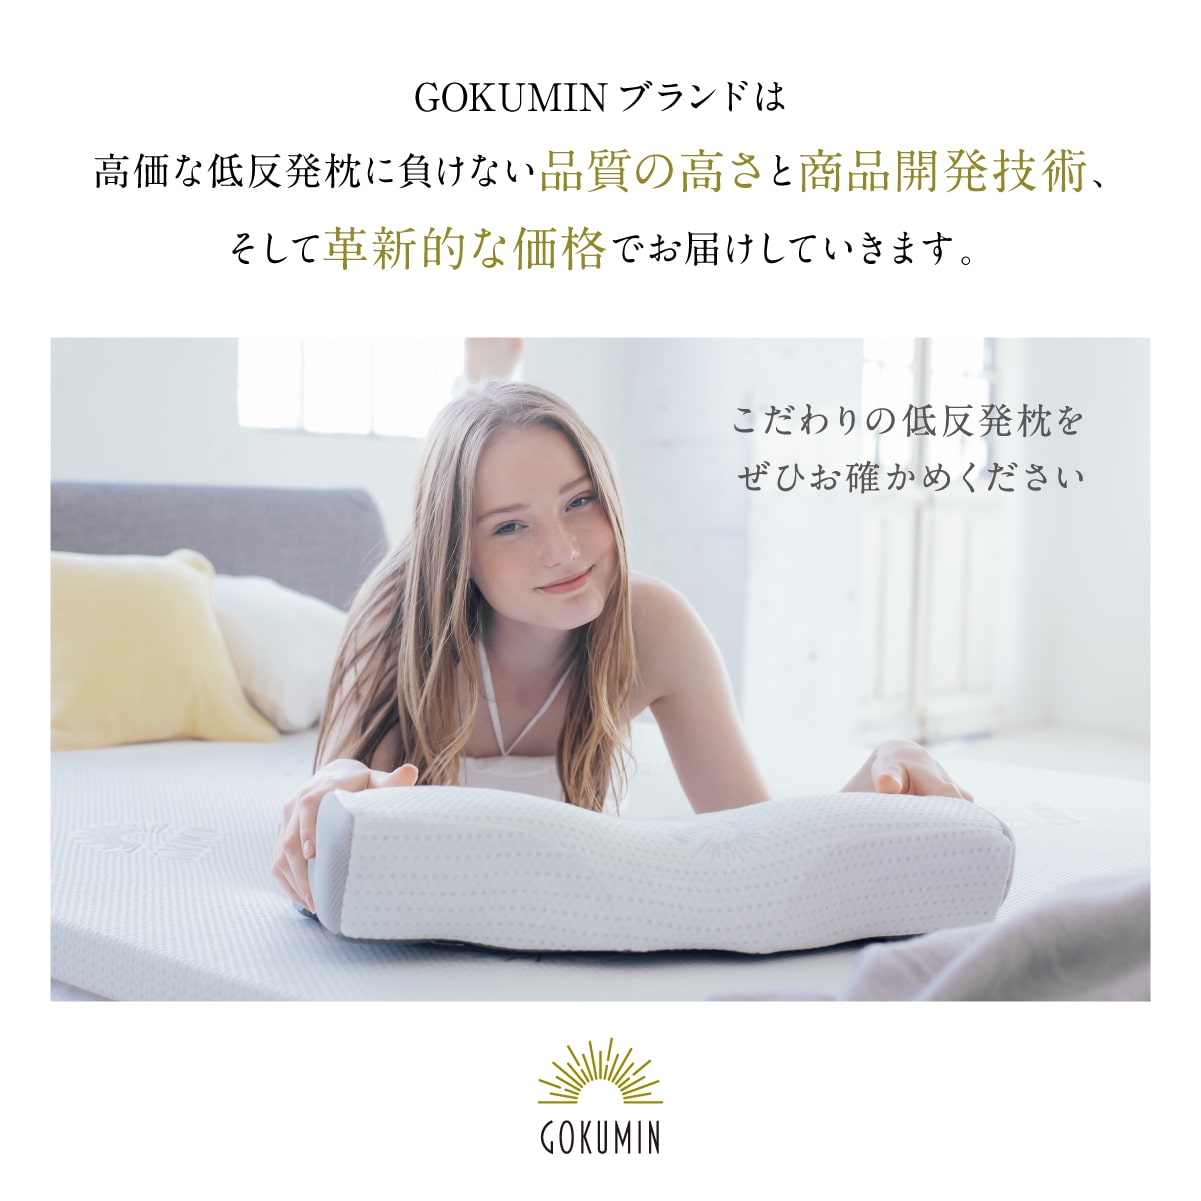 4段階高さ調整機能で「失敗しない」】プレミアム低反発枕 – GOKUMIN